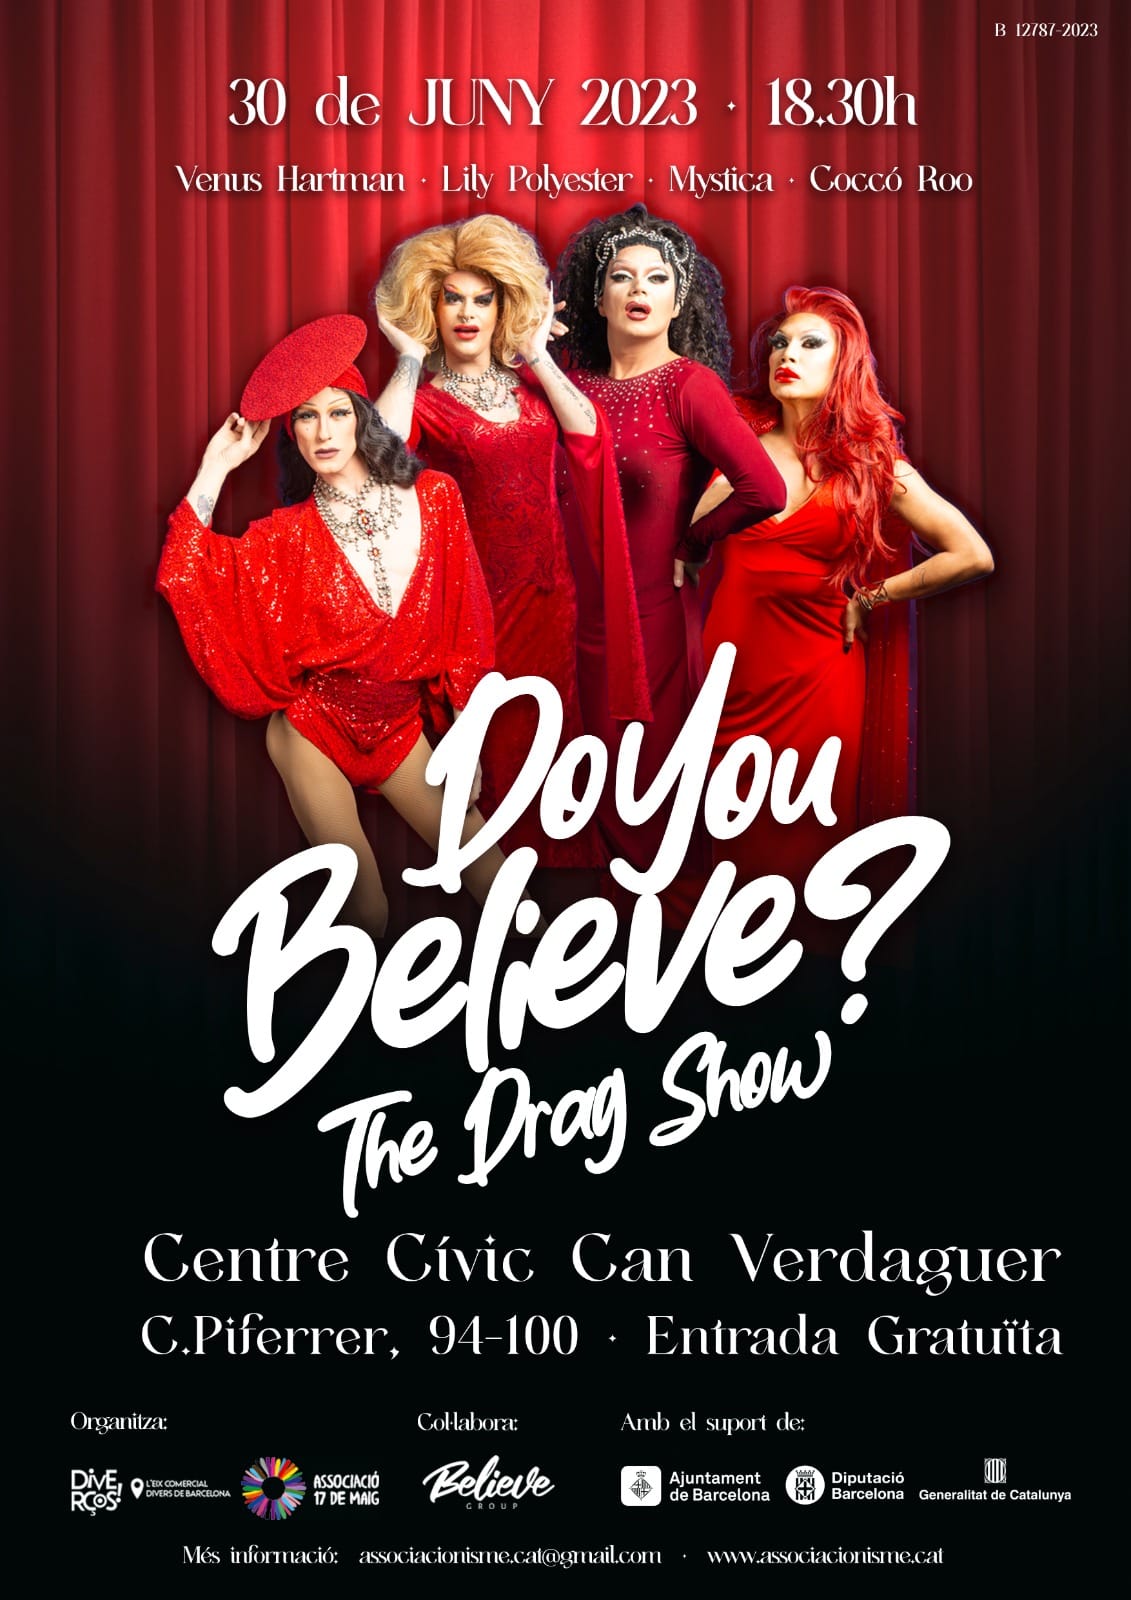 30 de junio – Do you believe? The Drag Show